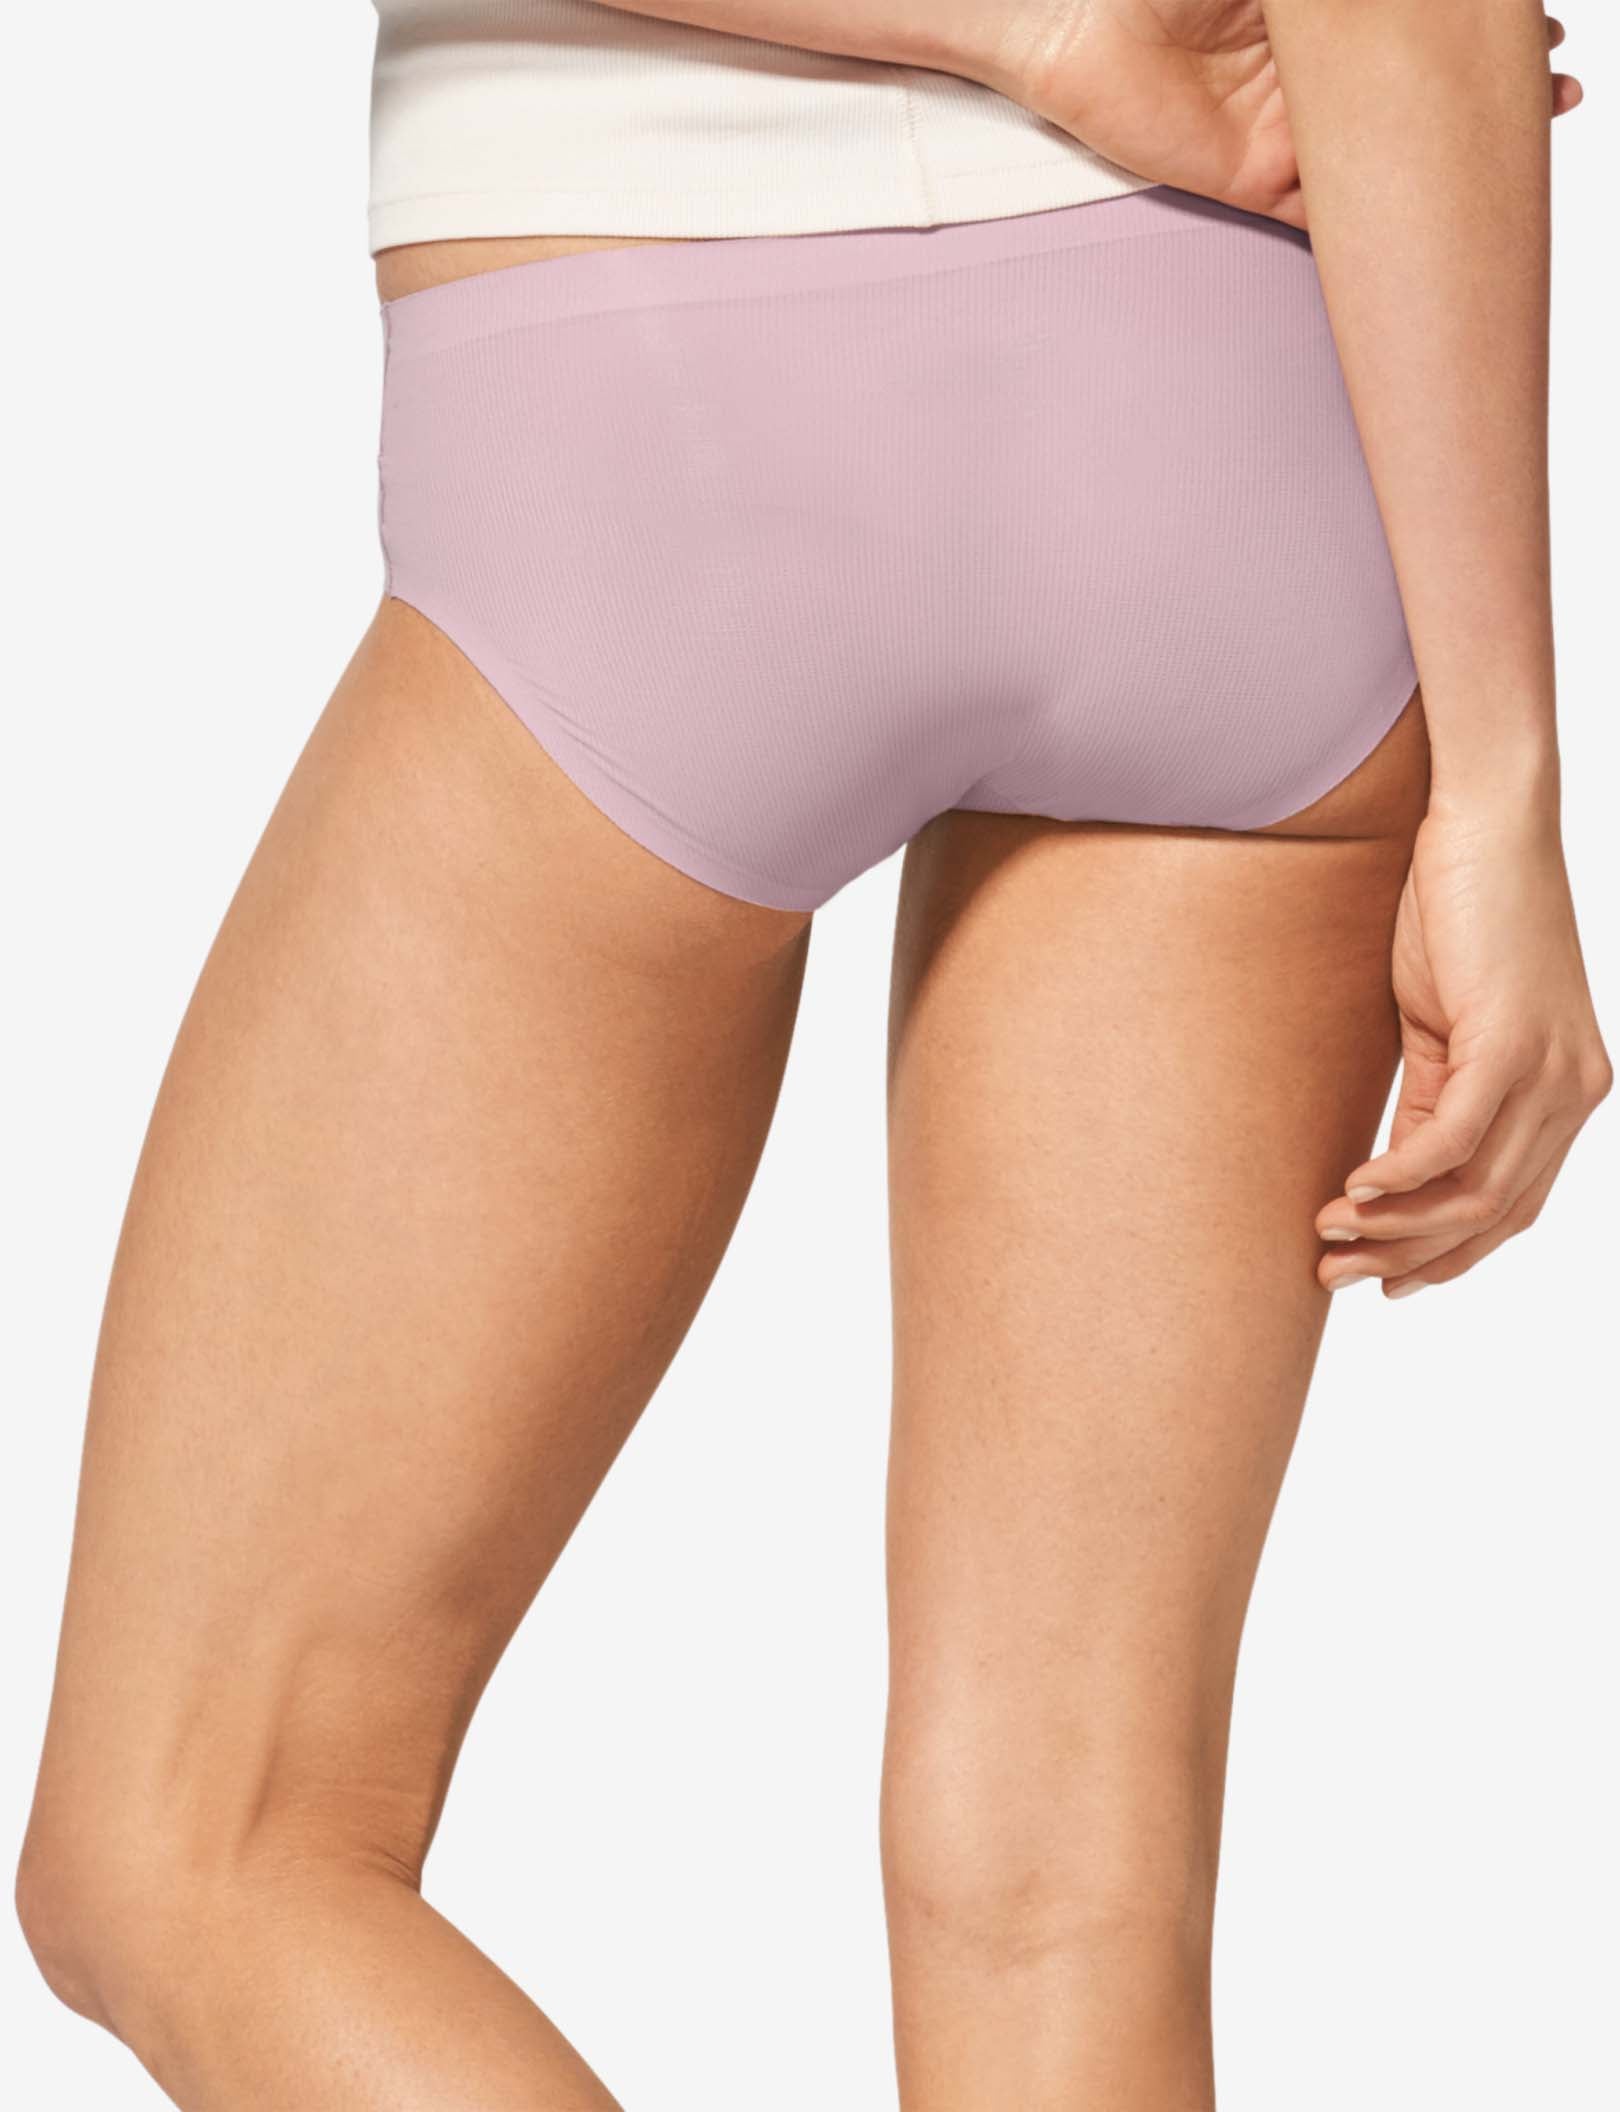 Women's Air Brief (Light Underwear)